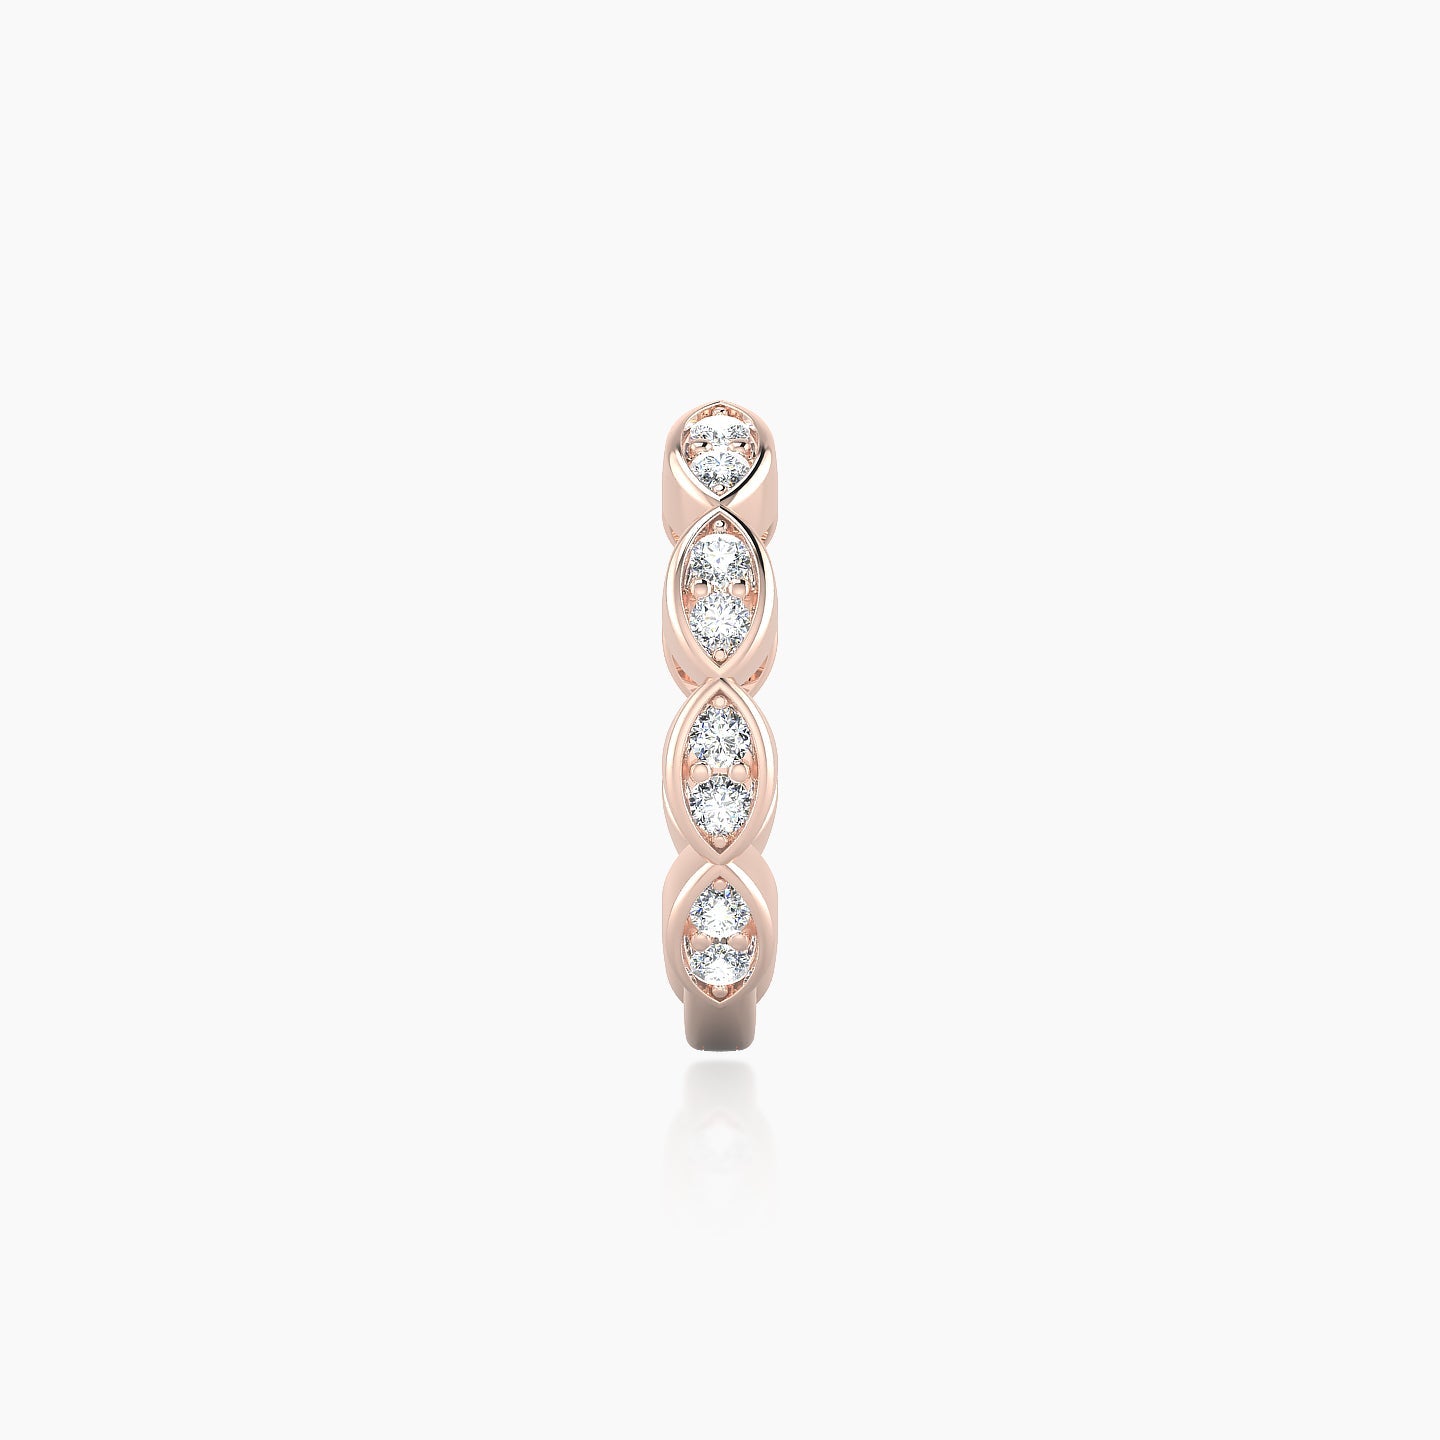 Hathor | 18k Rose Gold 9.5 mm Diamond Nose Ring Piercing